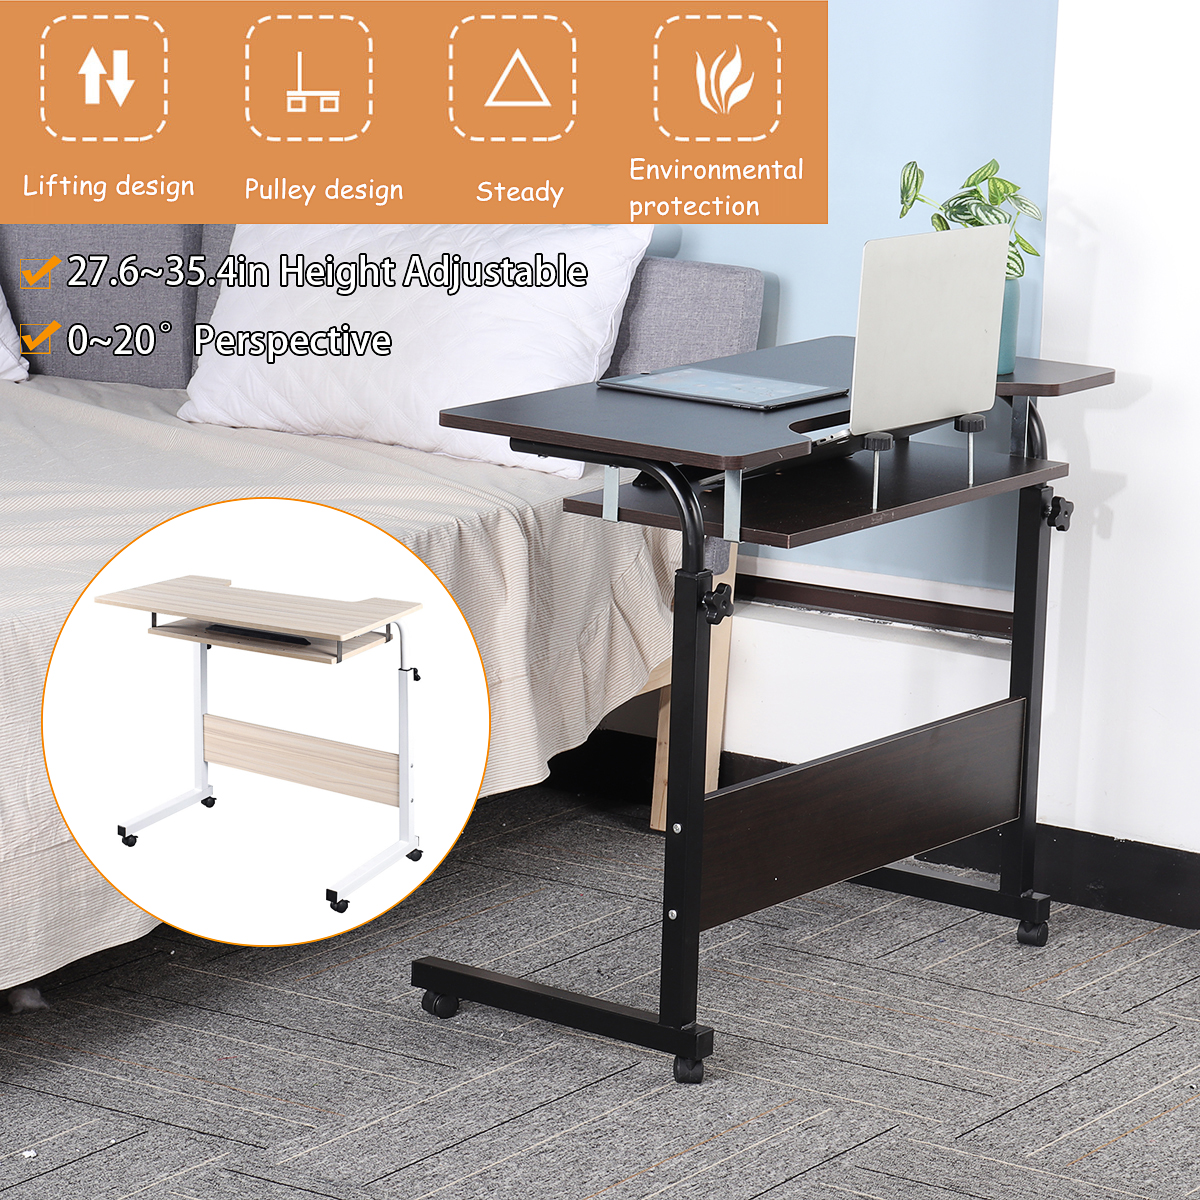 Mobile-Rolling-Computer-Laptop-Desk-Bedside-Workstation-Height-Adjustable-Table-Shelf-1743180-1